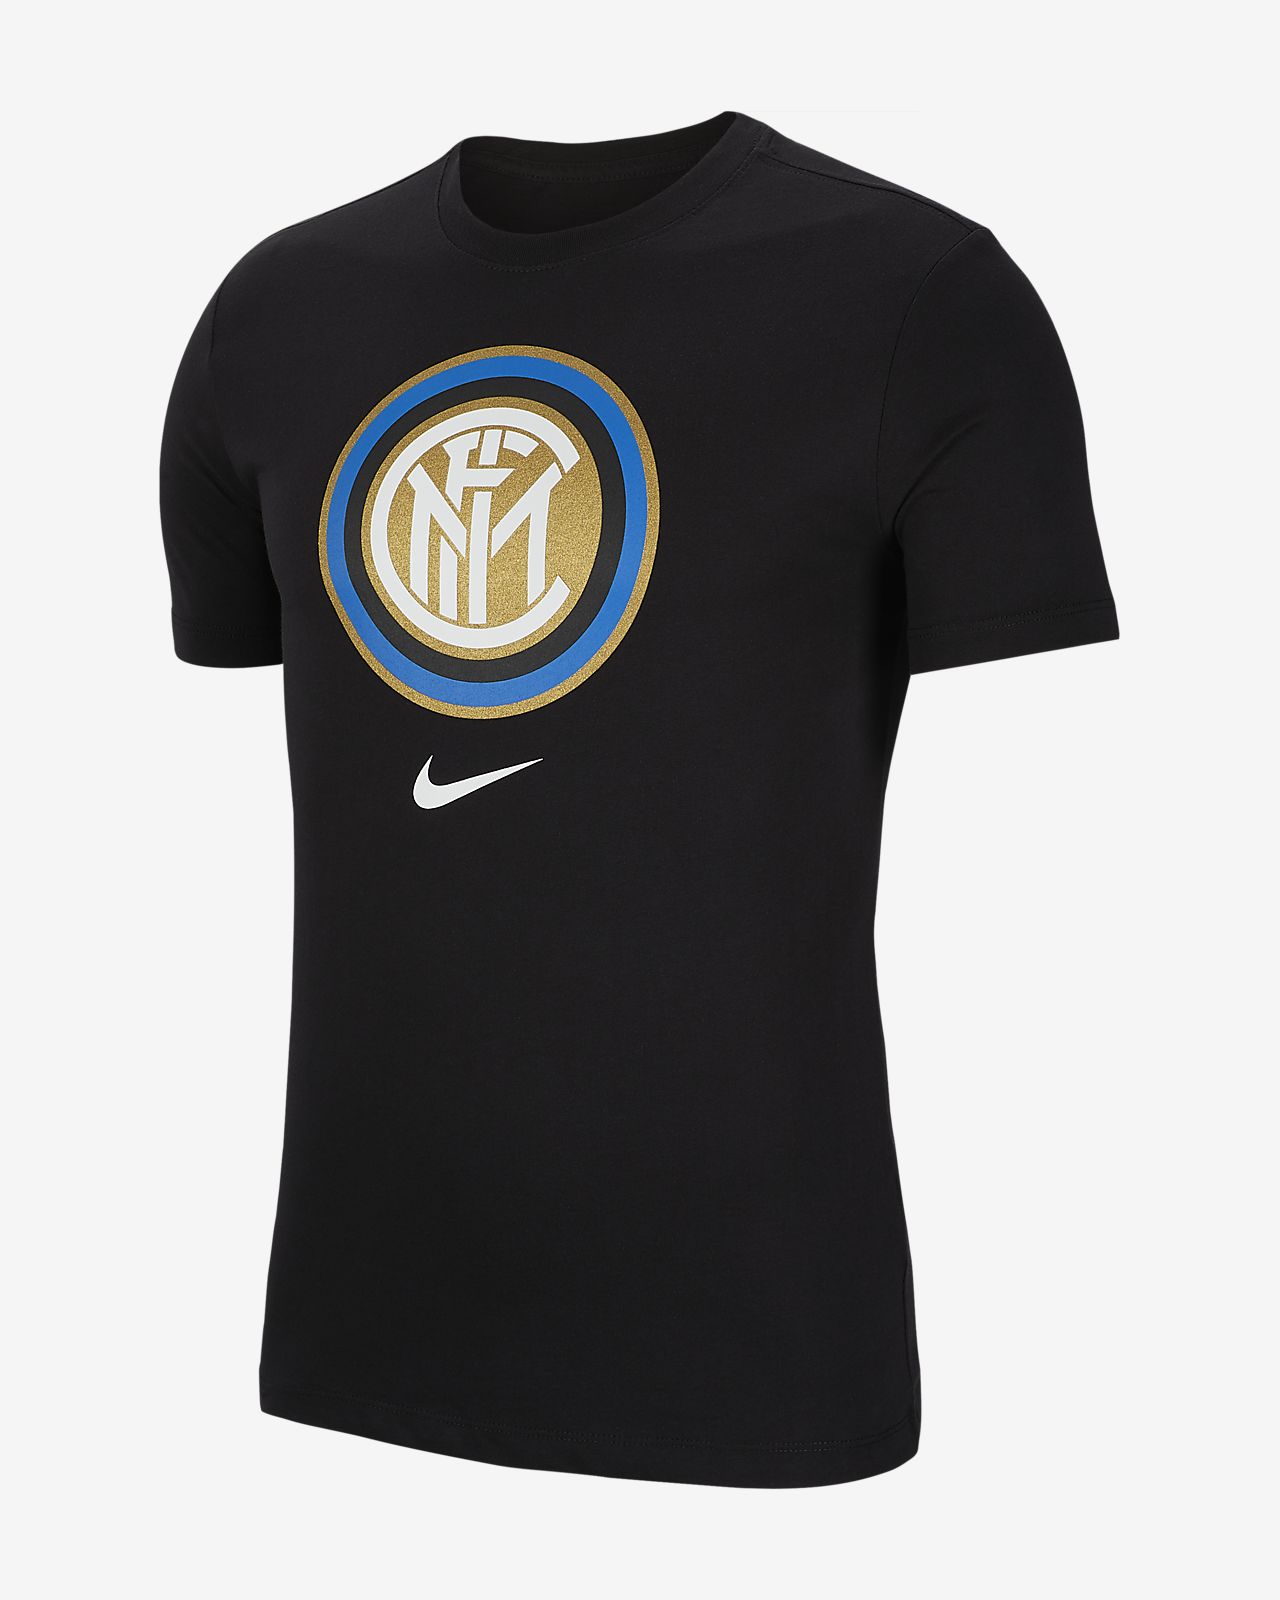 Inter Milan Men's T-Shirt. Nike RO